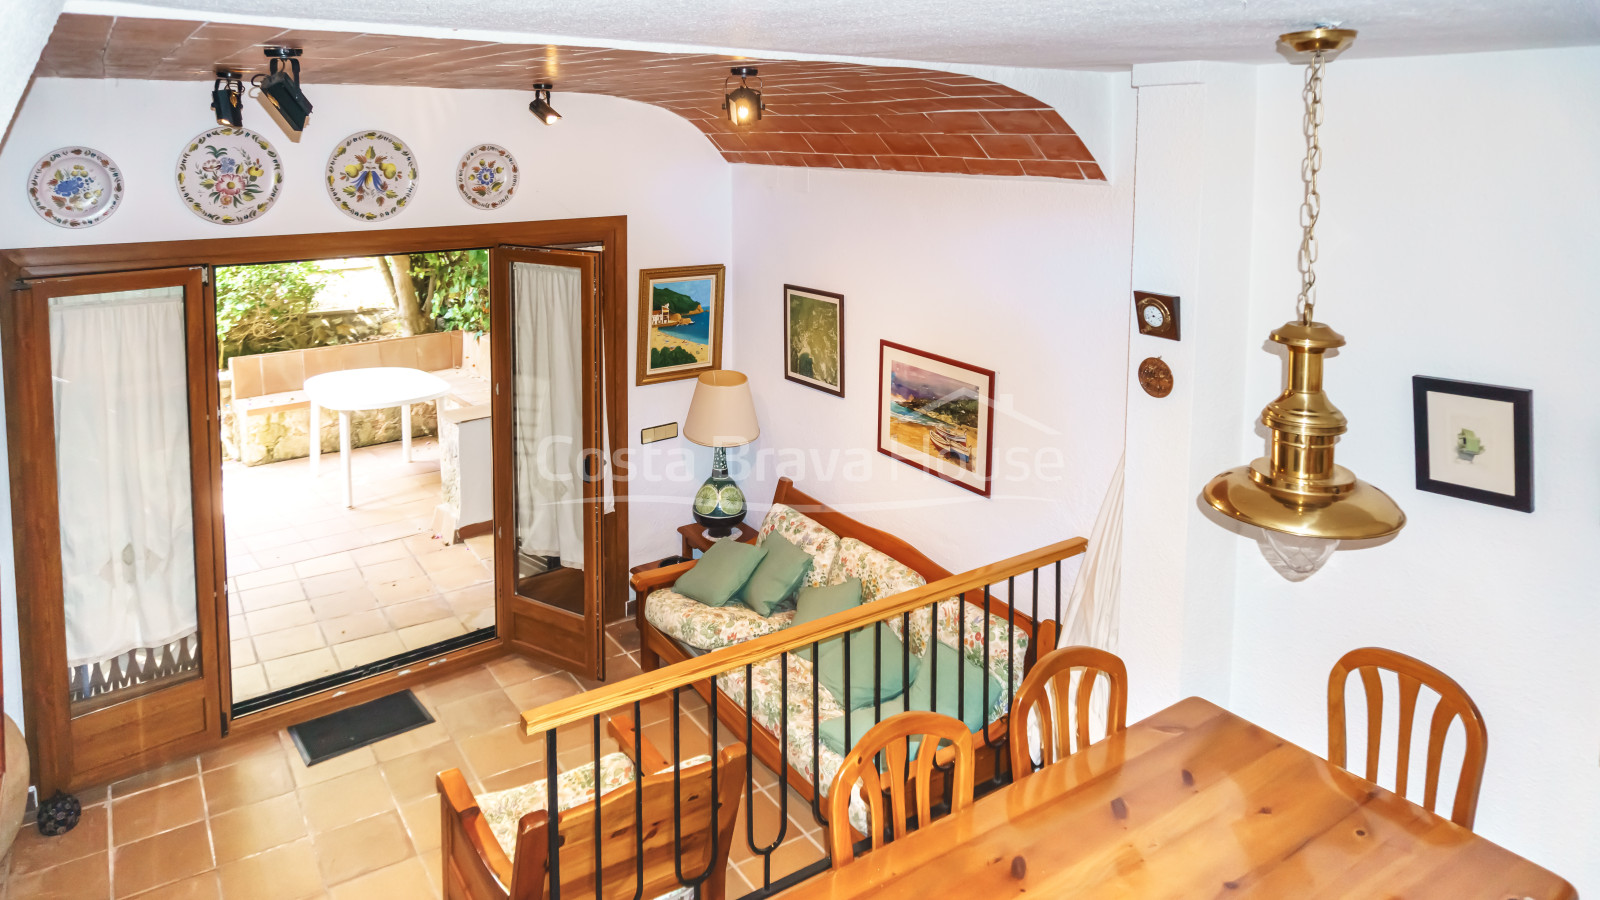 Casa adosada a 400 m de la playa de Tamariu con jardín, piscina y garaje comunitarios